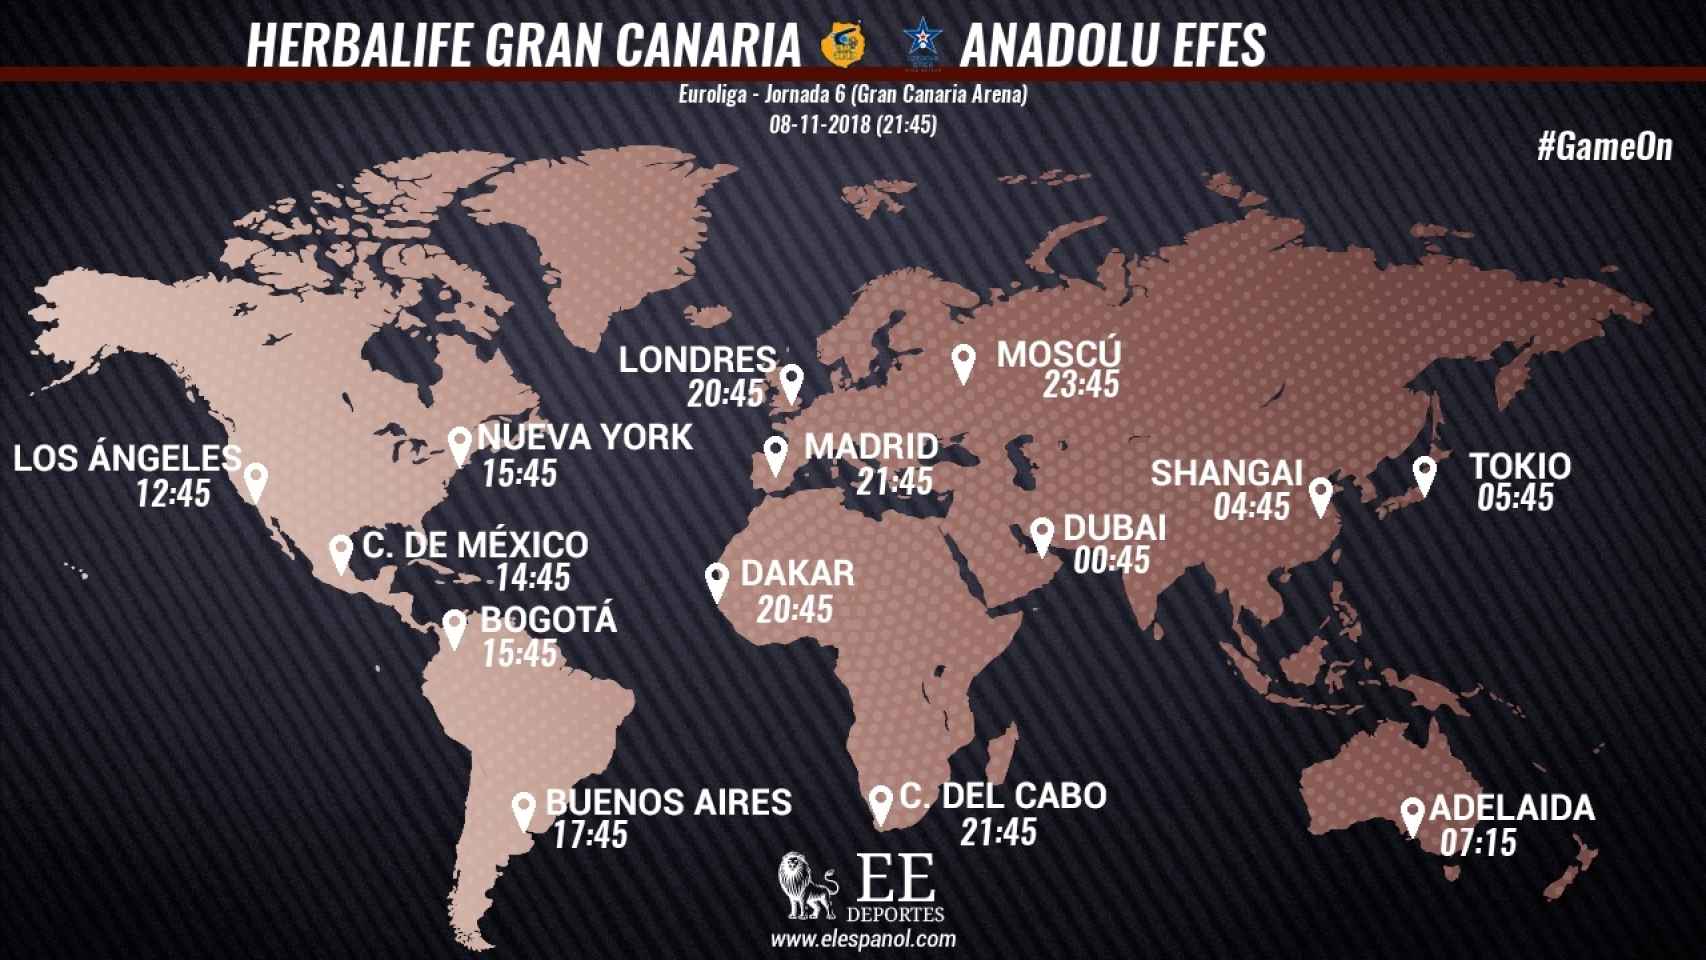 Horario internacional del Herbalife Gran Canaria - Anadolu Efes